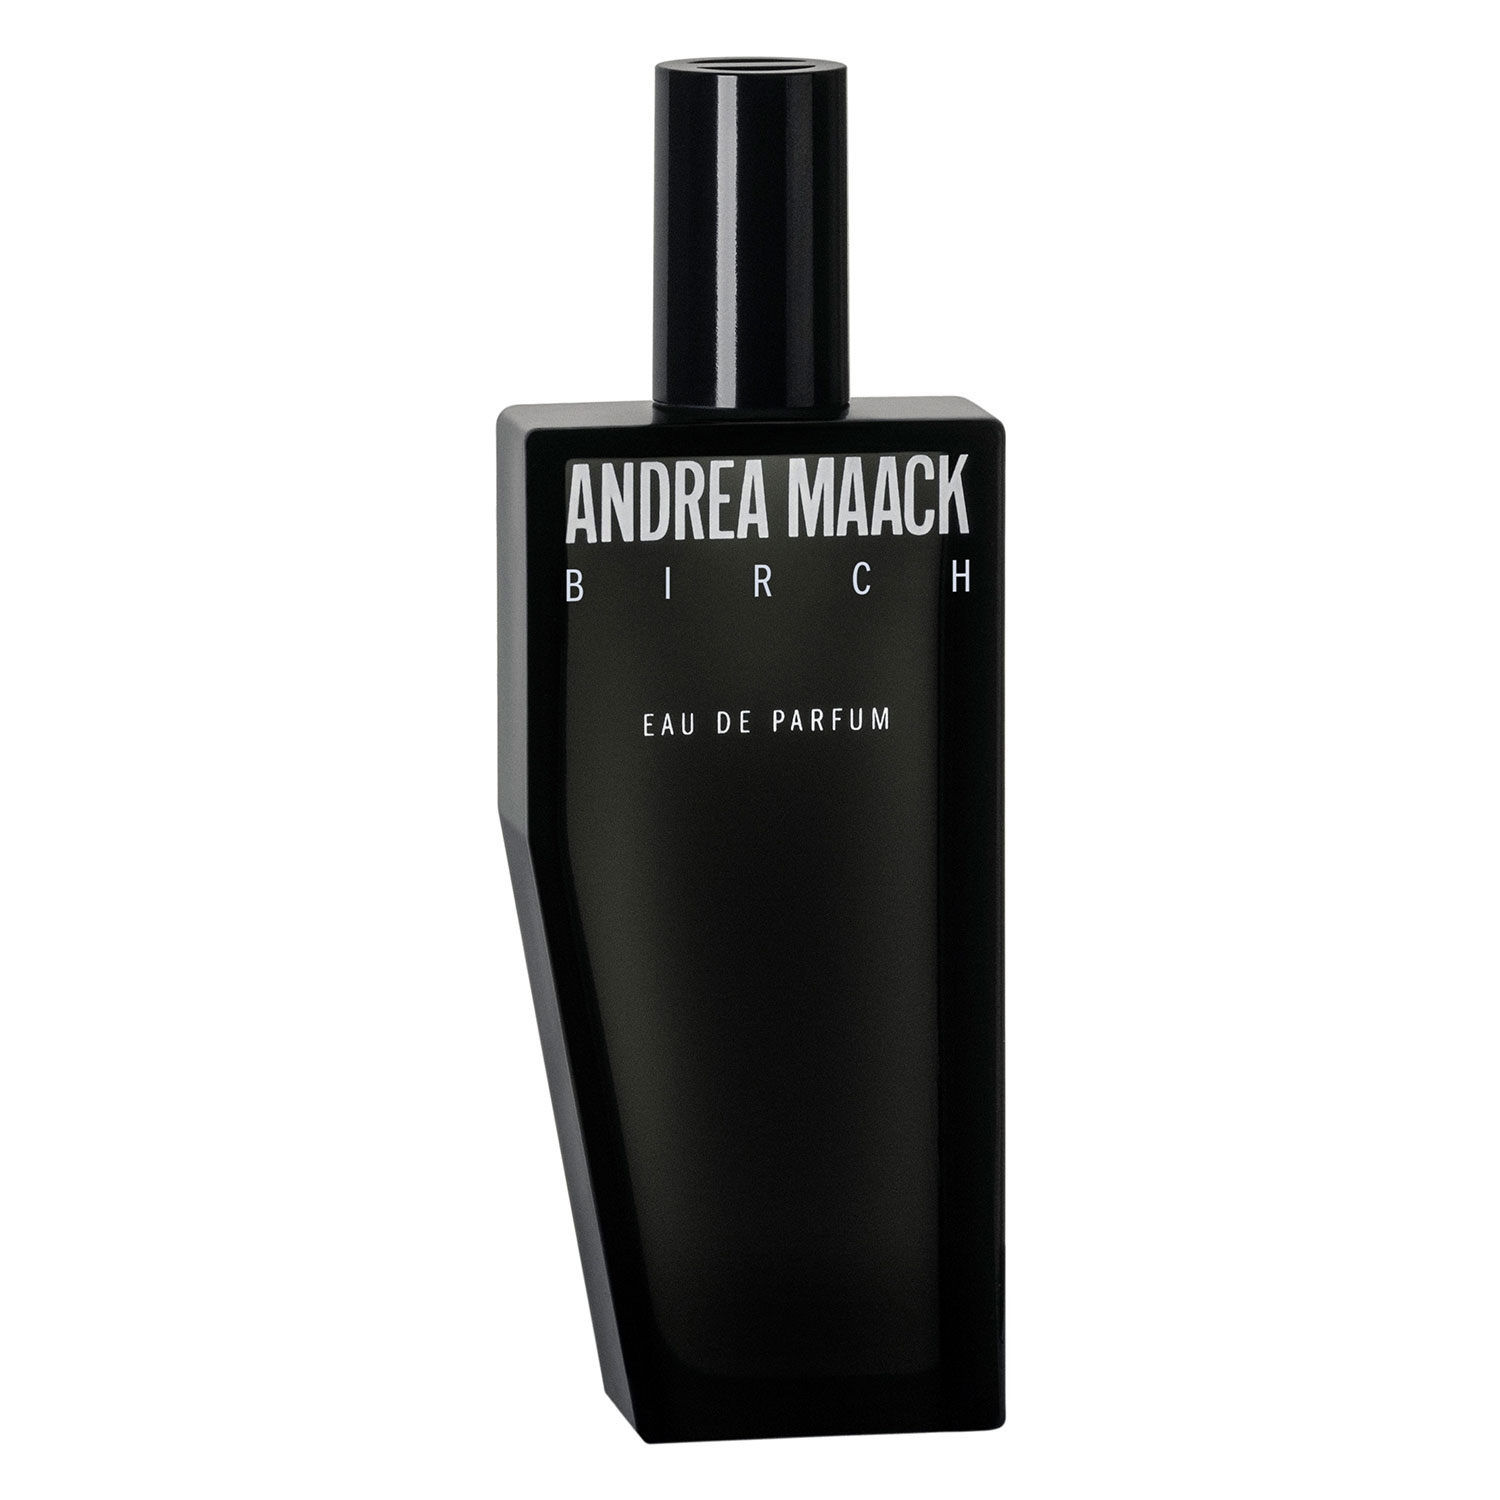 Produktbild von ANDREA MAACK - BIRCH Eau de Parfum